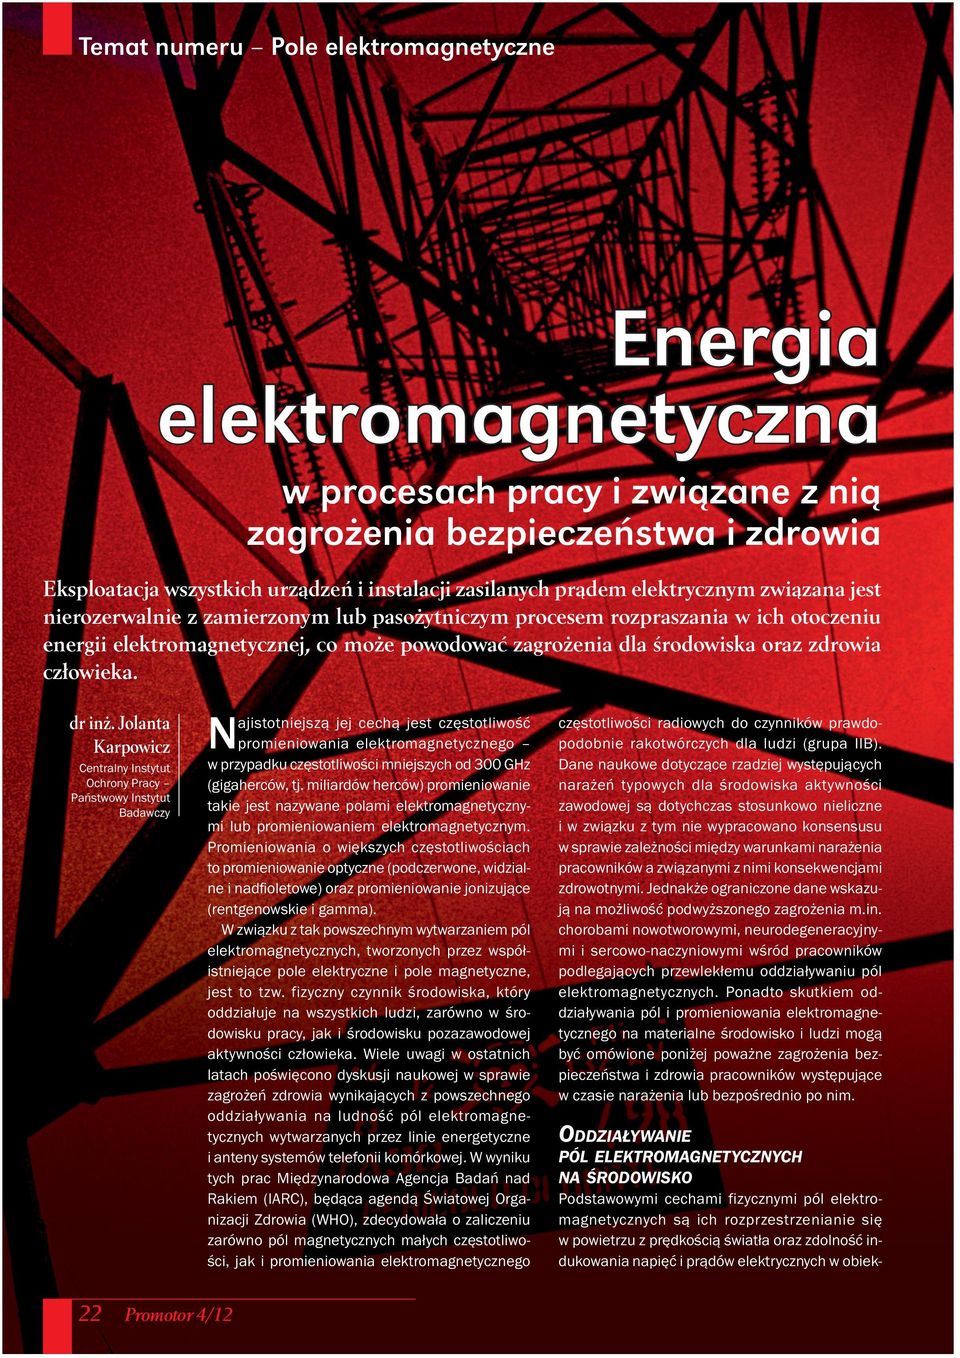 Jolanta Karpowicz Centralny Instytut Ochrony Pracy Państwowy Instytut Badawczy Najistotniejszą jej cechą jest częstotliwość promieniowania elektromagnetycznego w przypadku częstotliwości mniejszych